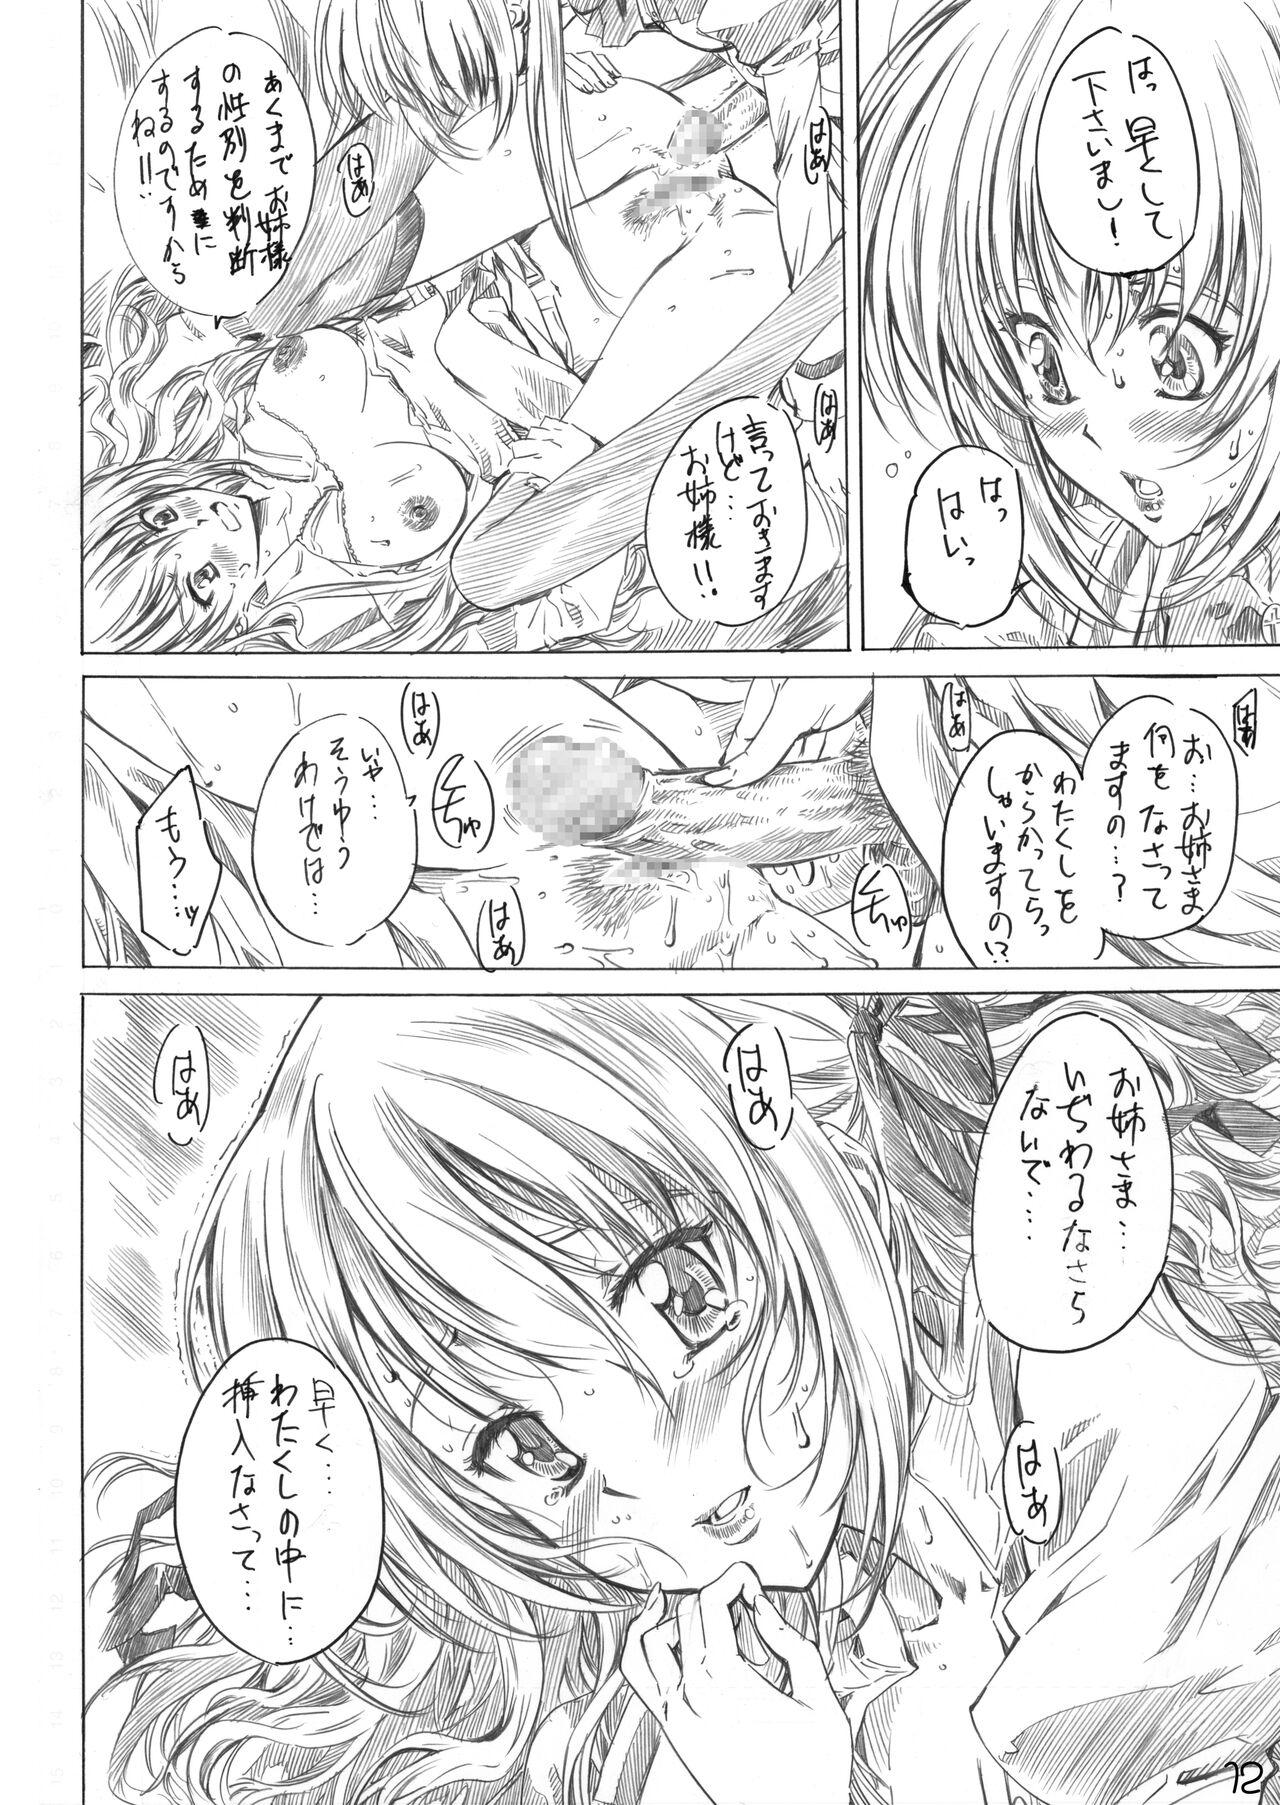 Licking Otome wa Boku de Nani Shiteru - Otome wa boku ni koishiteru Arabic - Page 10